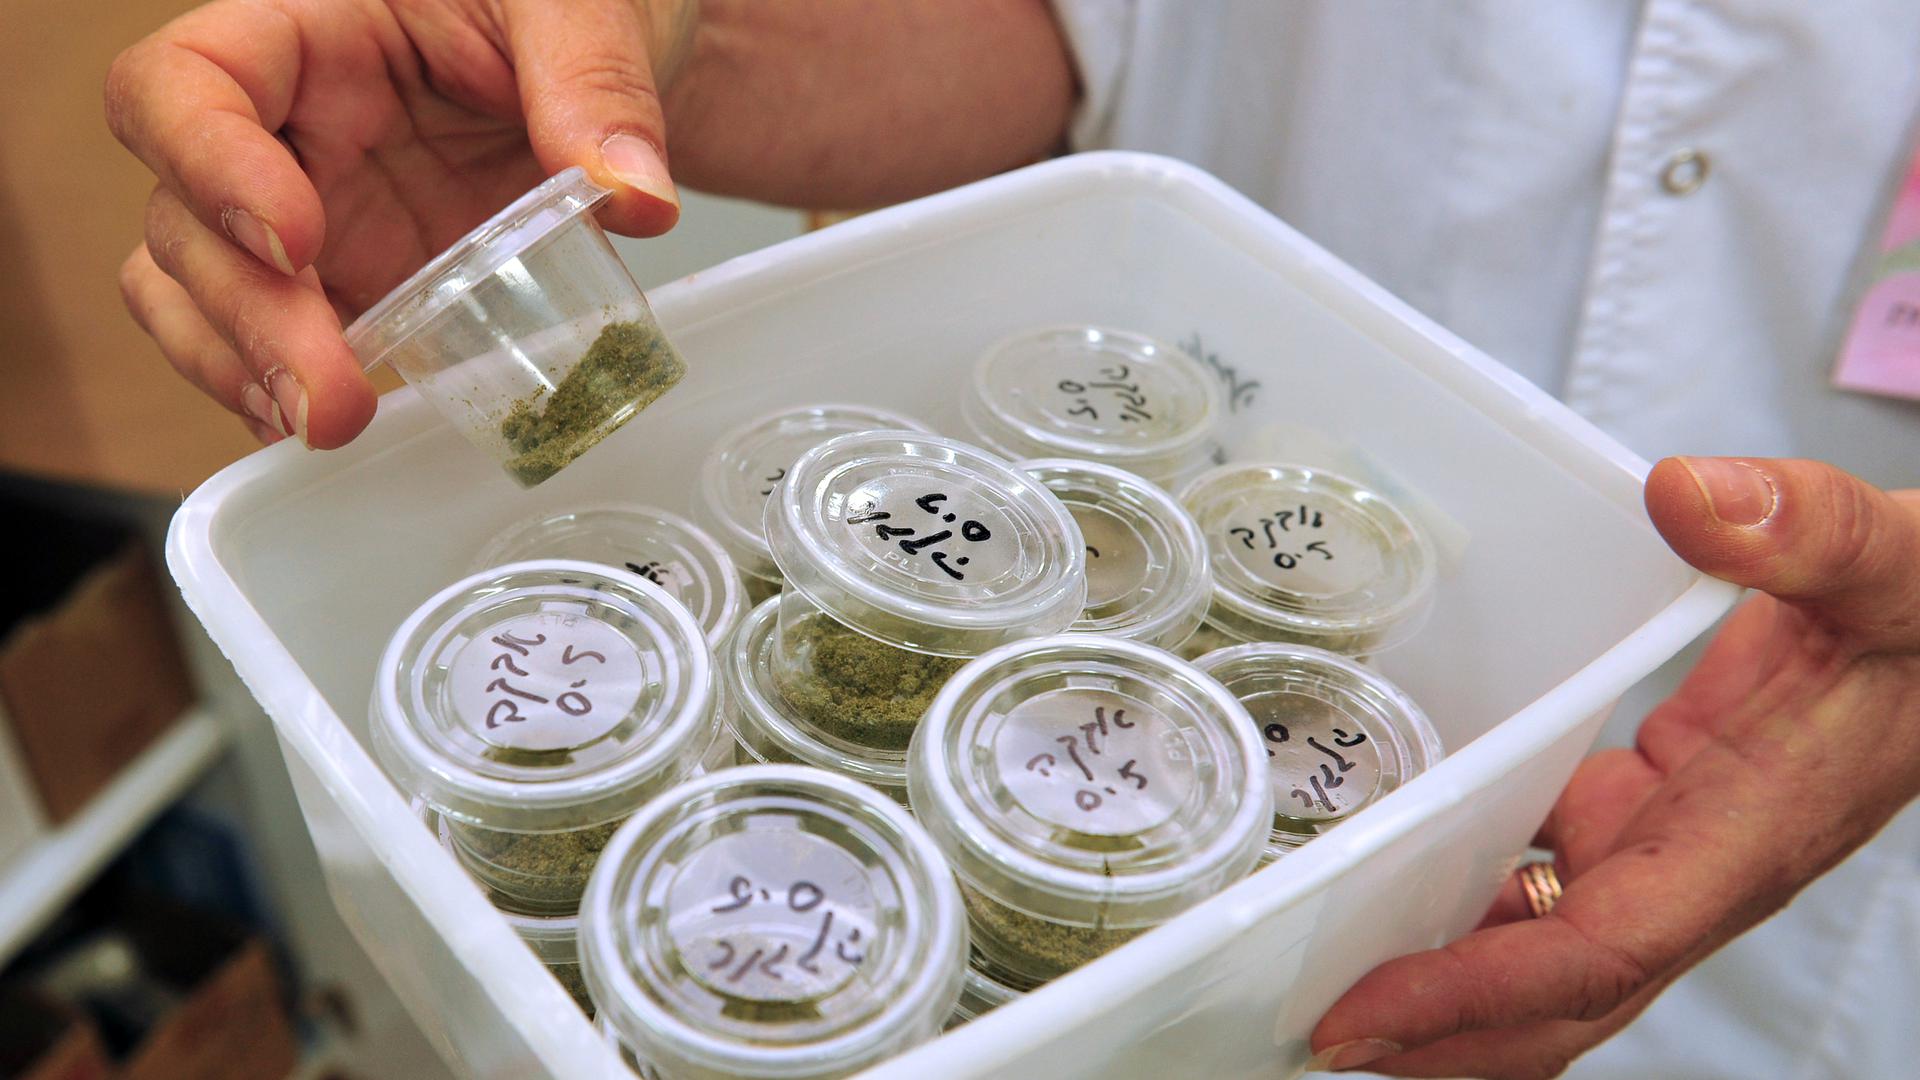 Le pays dispose actuellement d'une autorisation à hauteur de 270 kg d'importation de cannabis à usage thérapeutique.